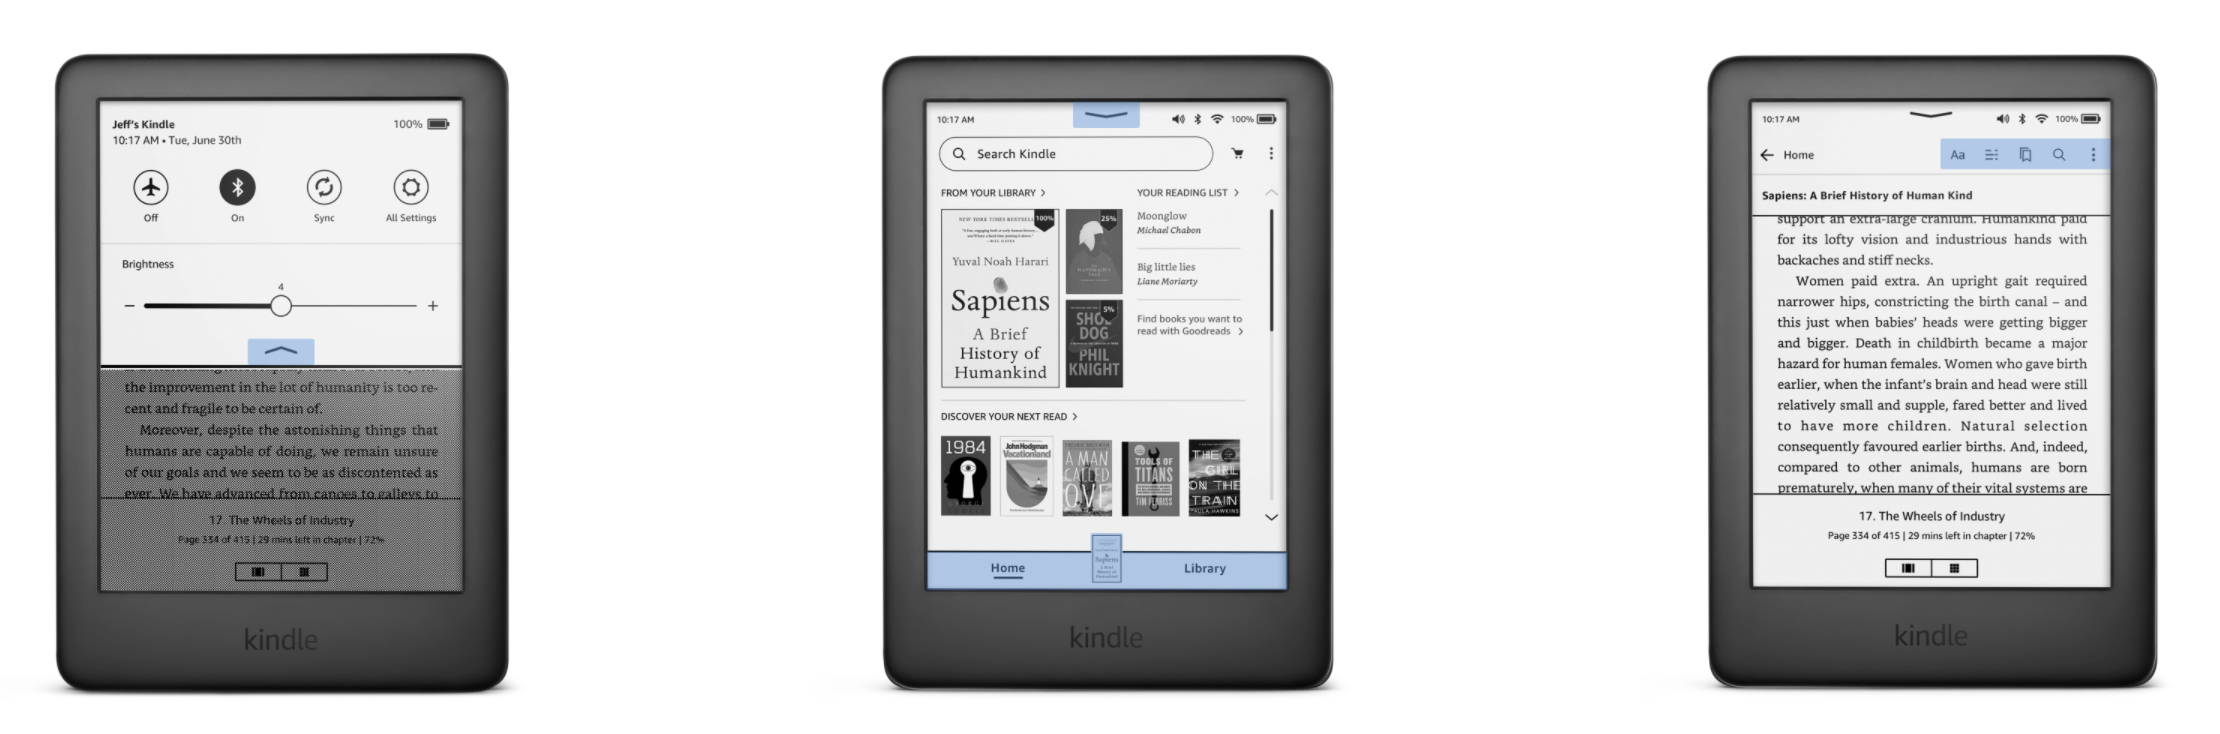 Amazon lanza el software Kindle rediseñado para facilitar la navegación